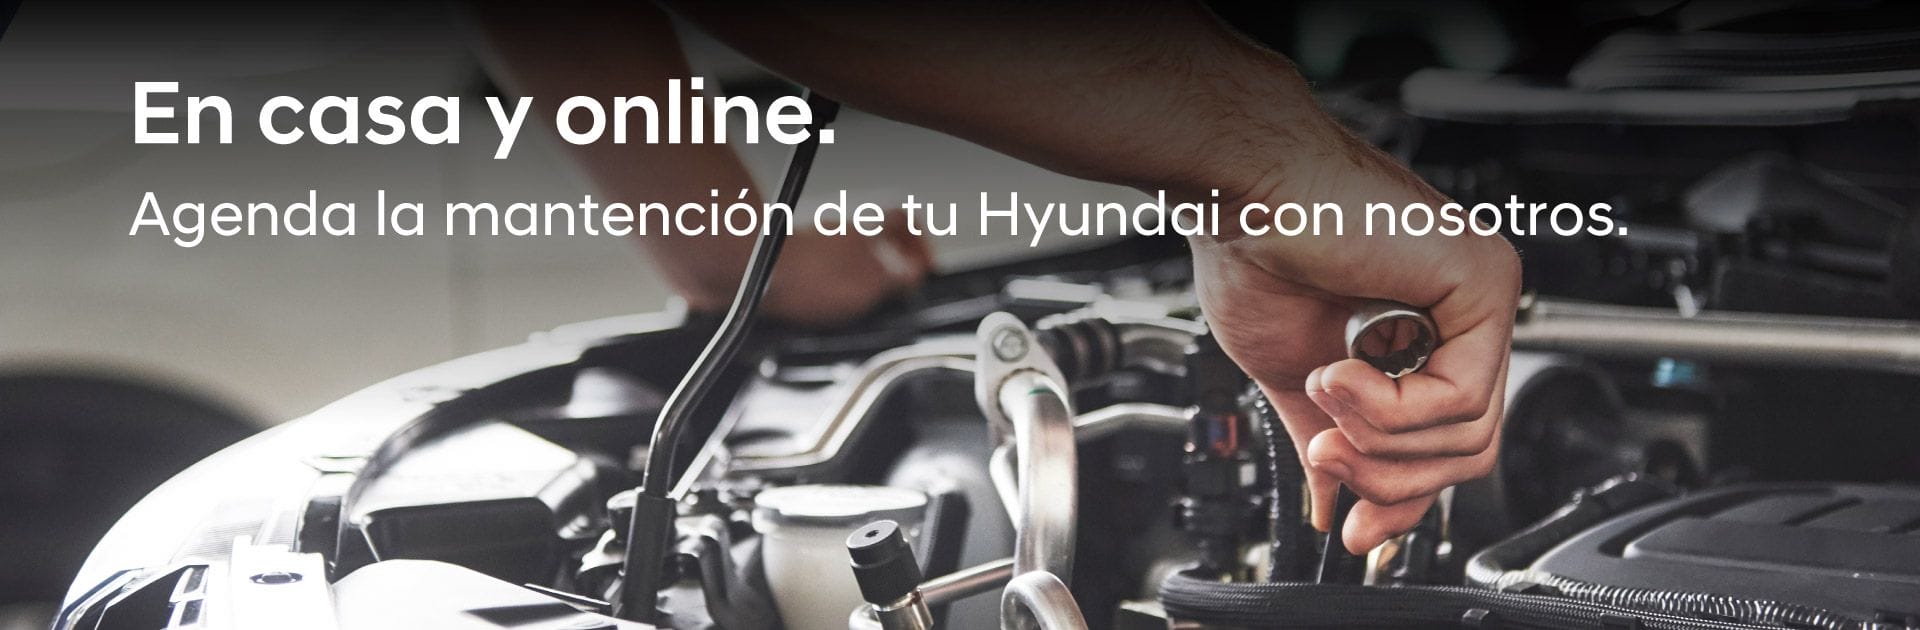 En casa y online. Agenda la mantención de tu Hyundai con nosotros.